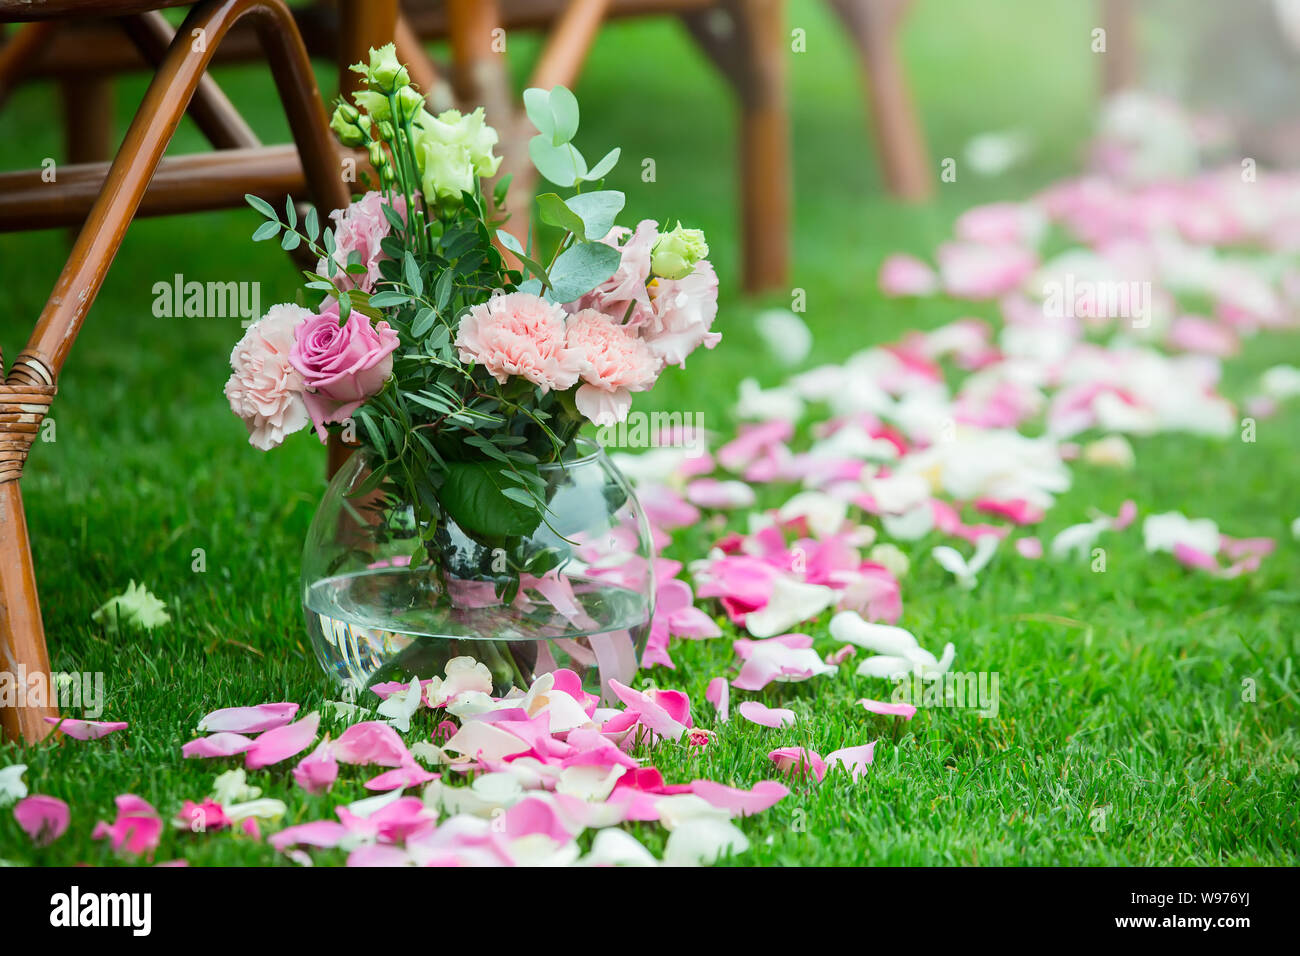 Outdoor cerimonia nuziale decorazione setup. Percorso con petali, sedie decorate con nastri colorati Foto Stock